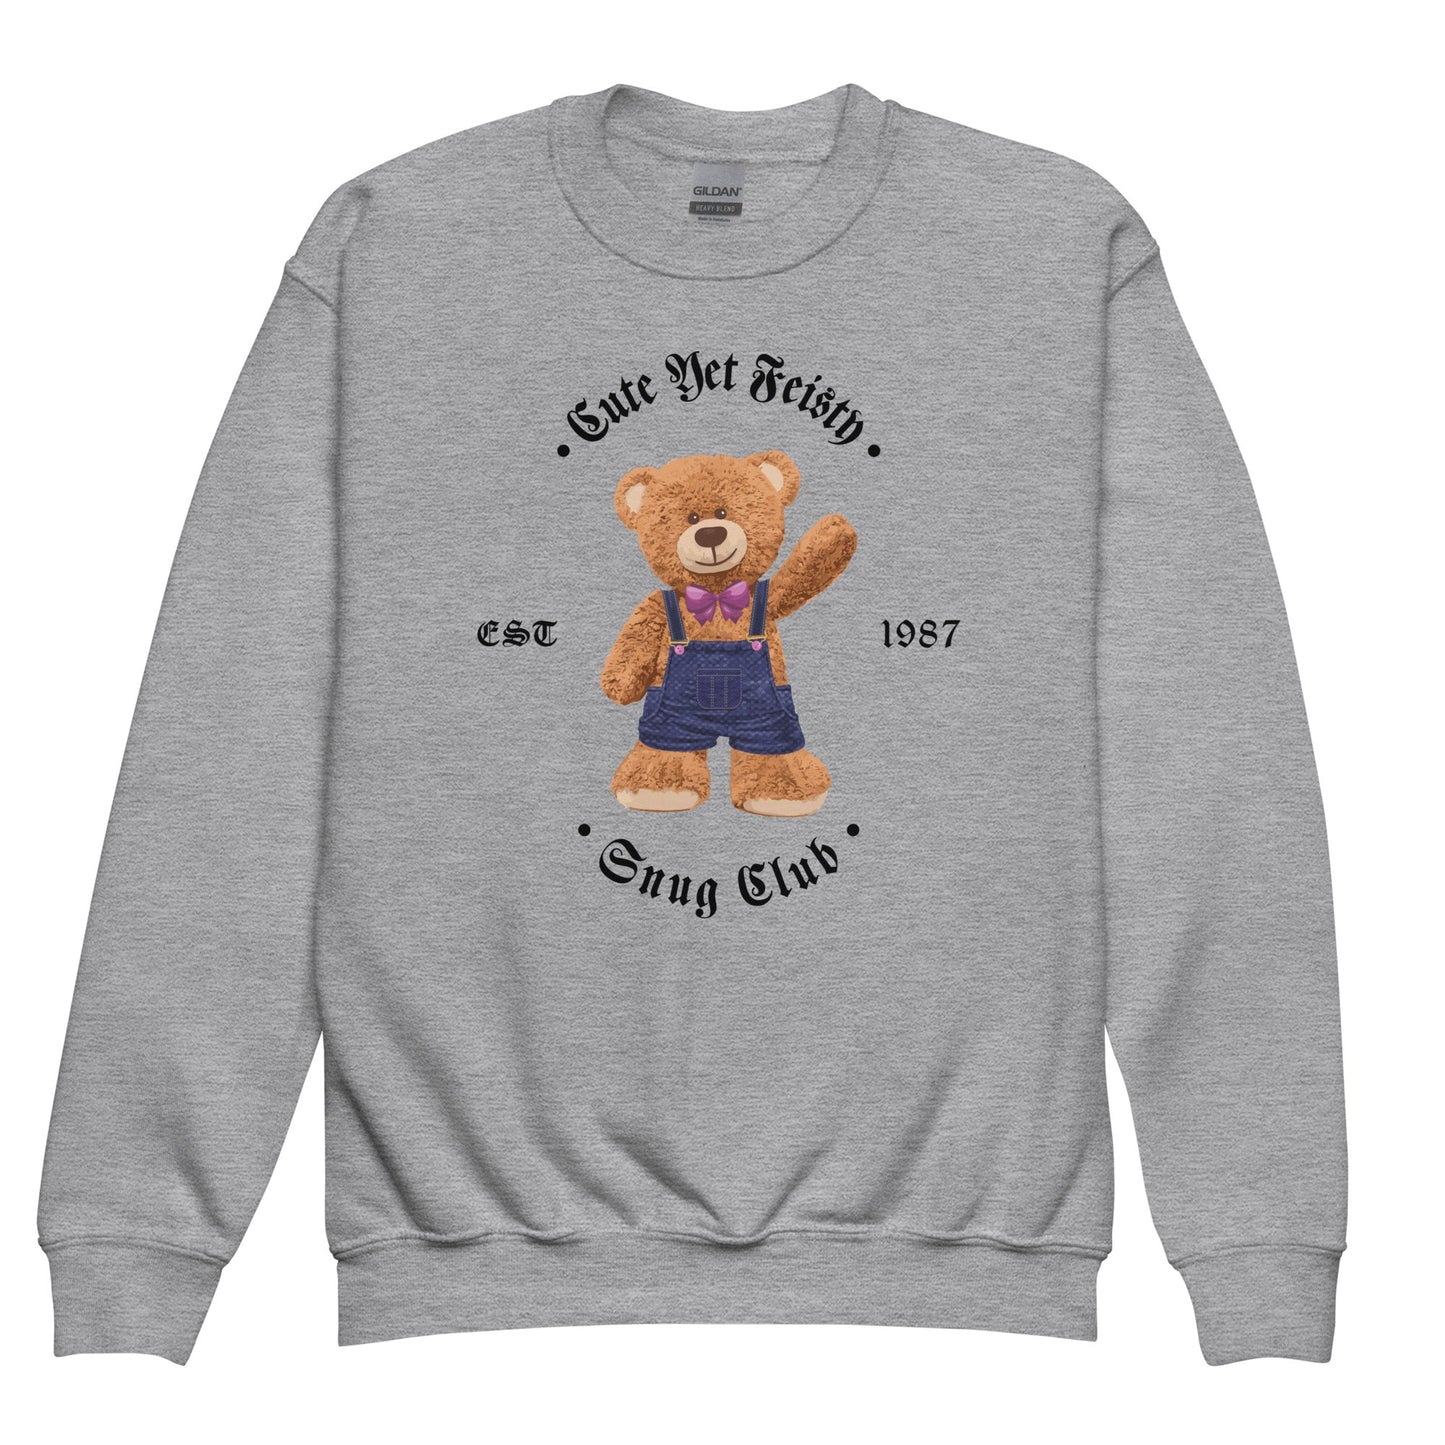 youth-crew-neck-sweatshirt-cute-teddy-bear-sport-grey